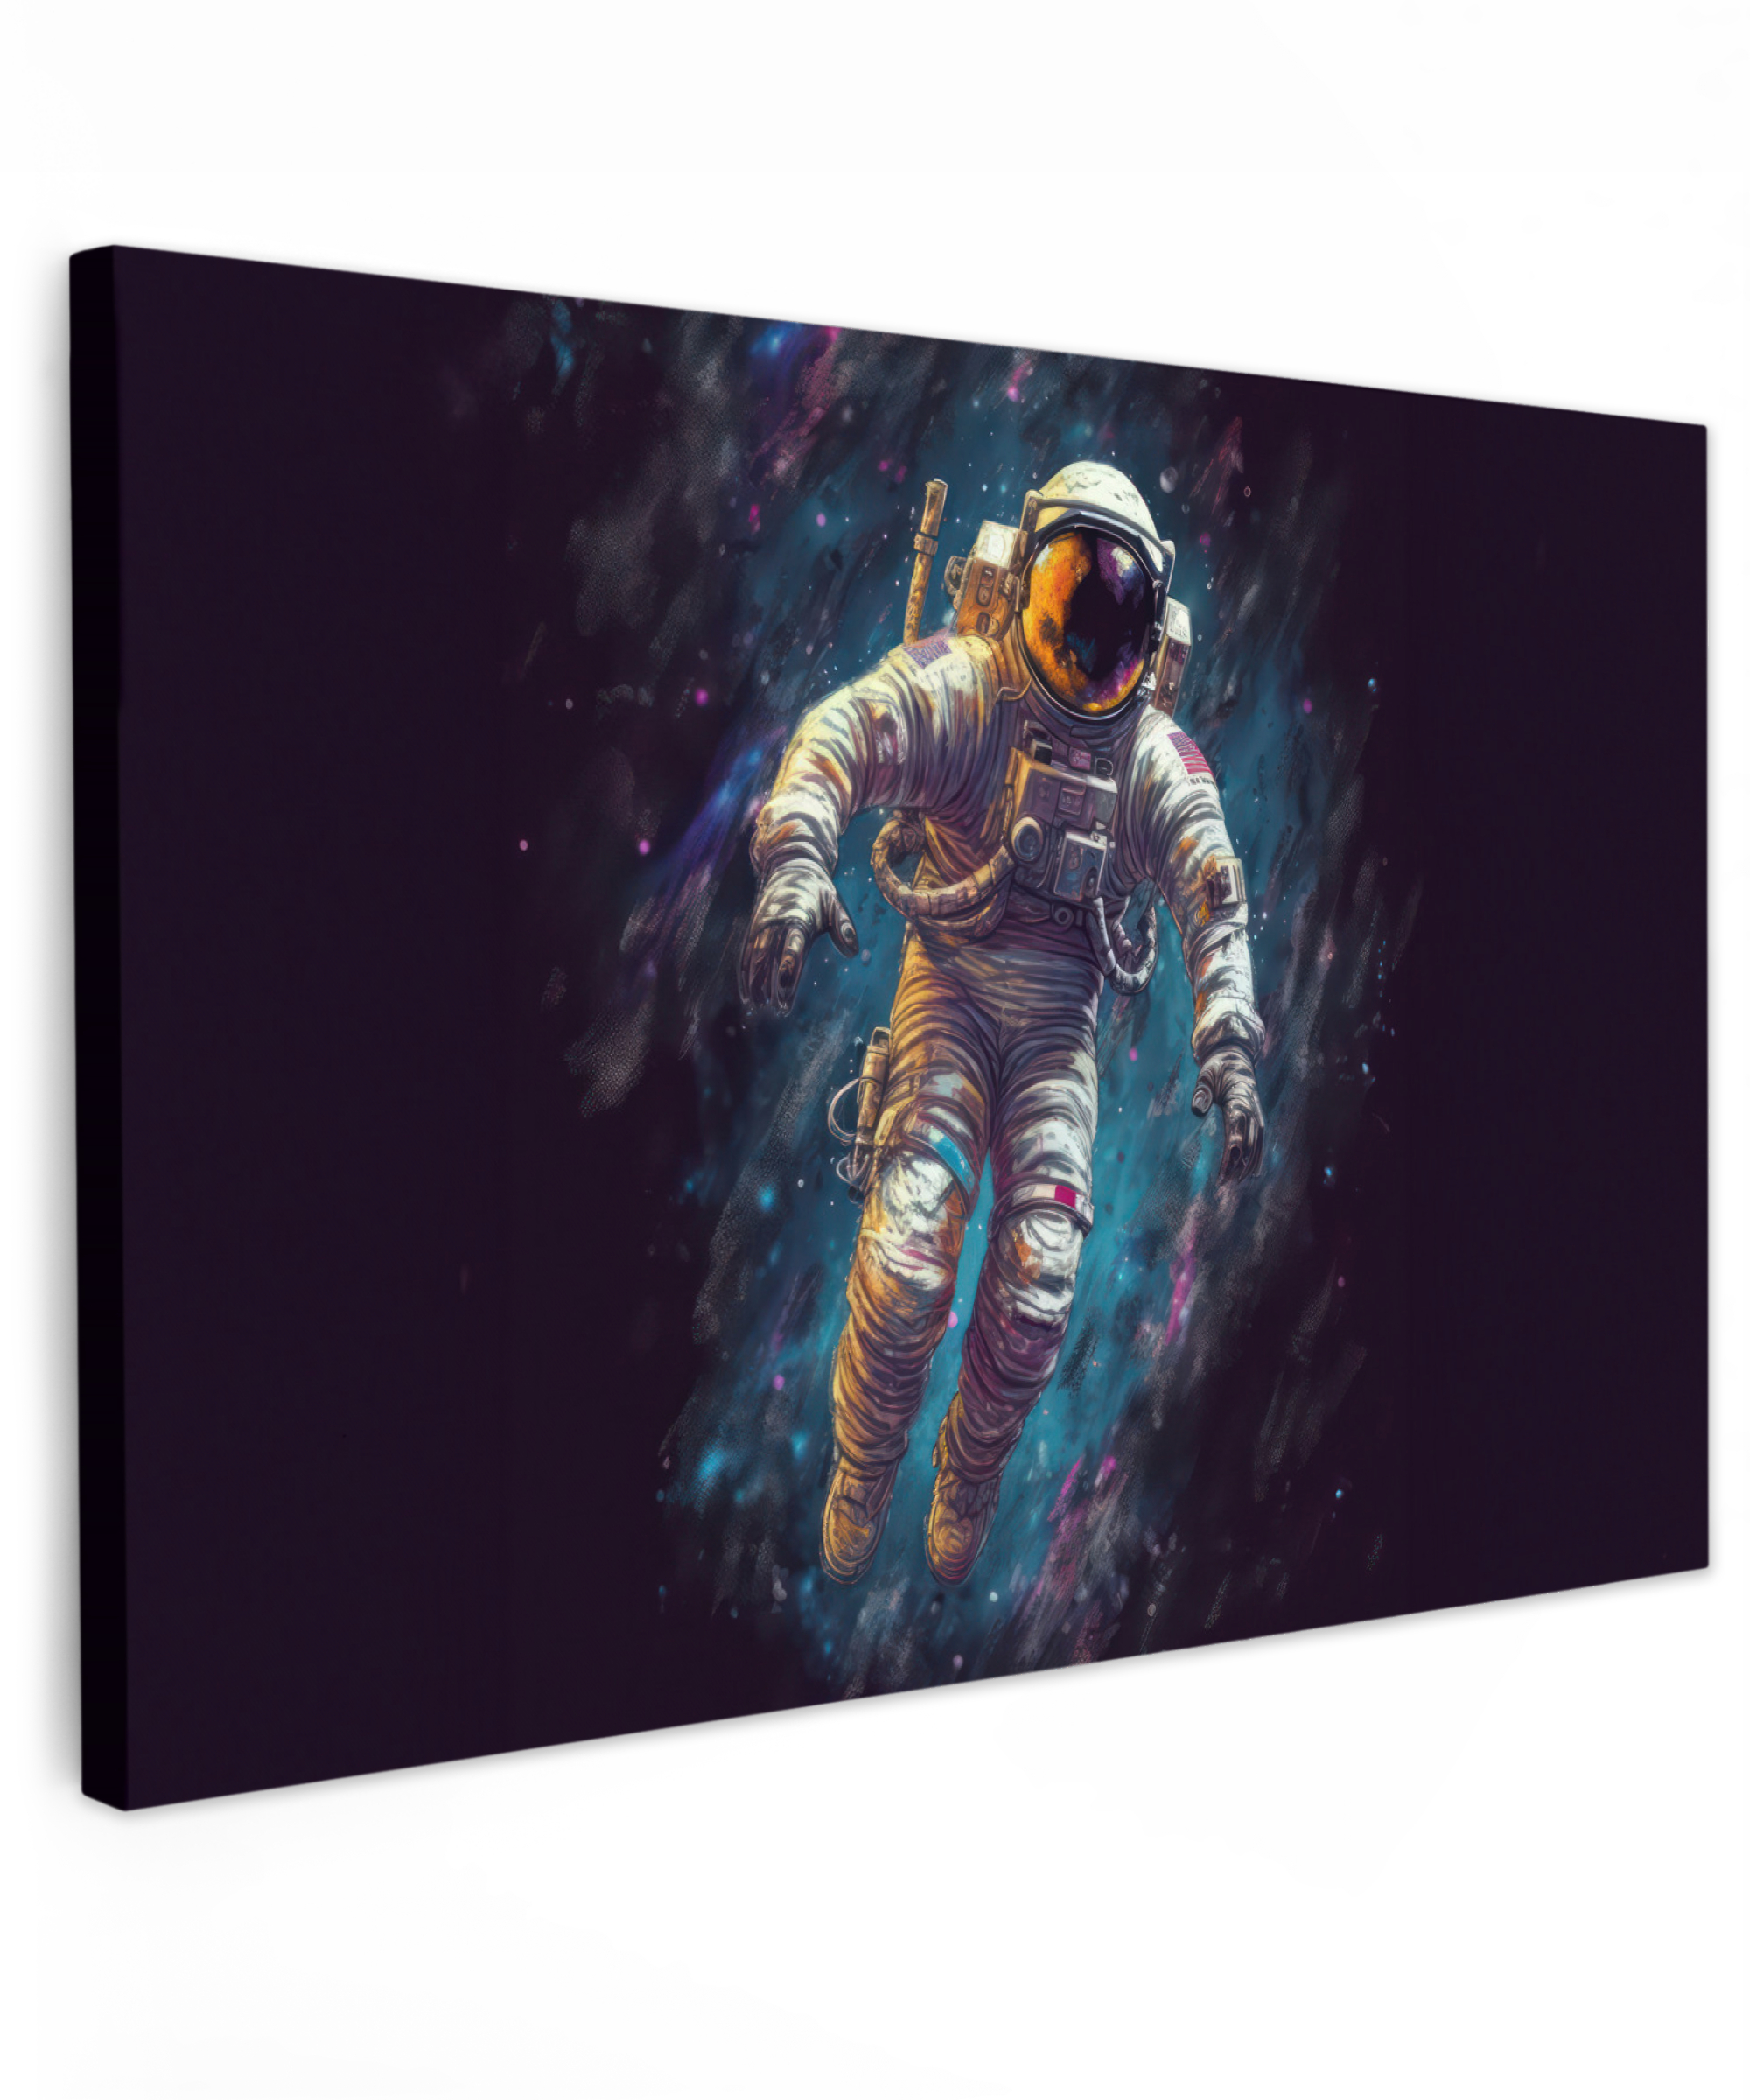 Tableau sur toile - Espace - Néon - Astronaute - Étoile